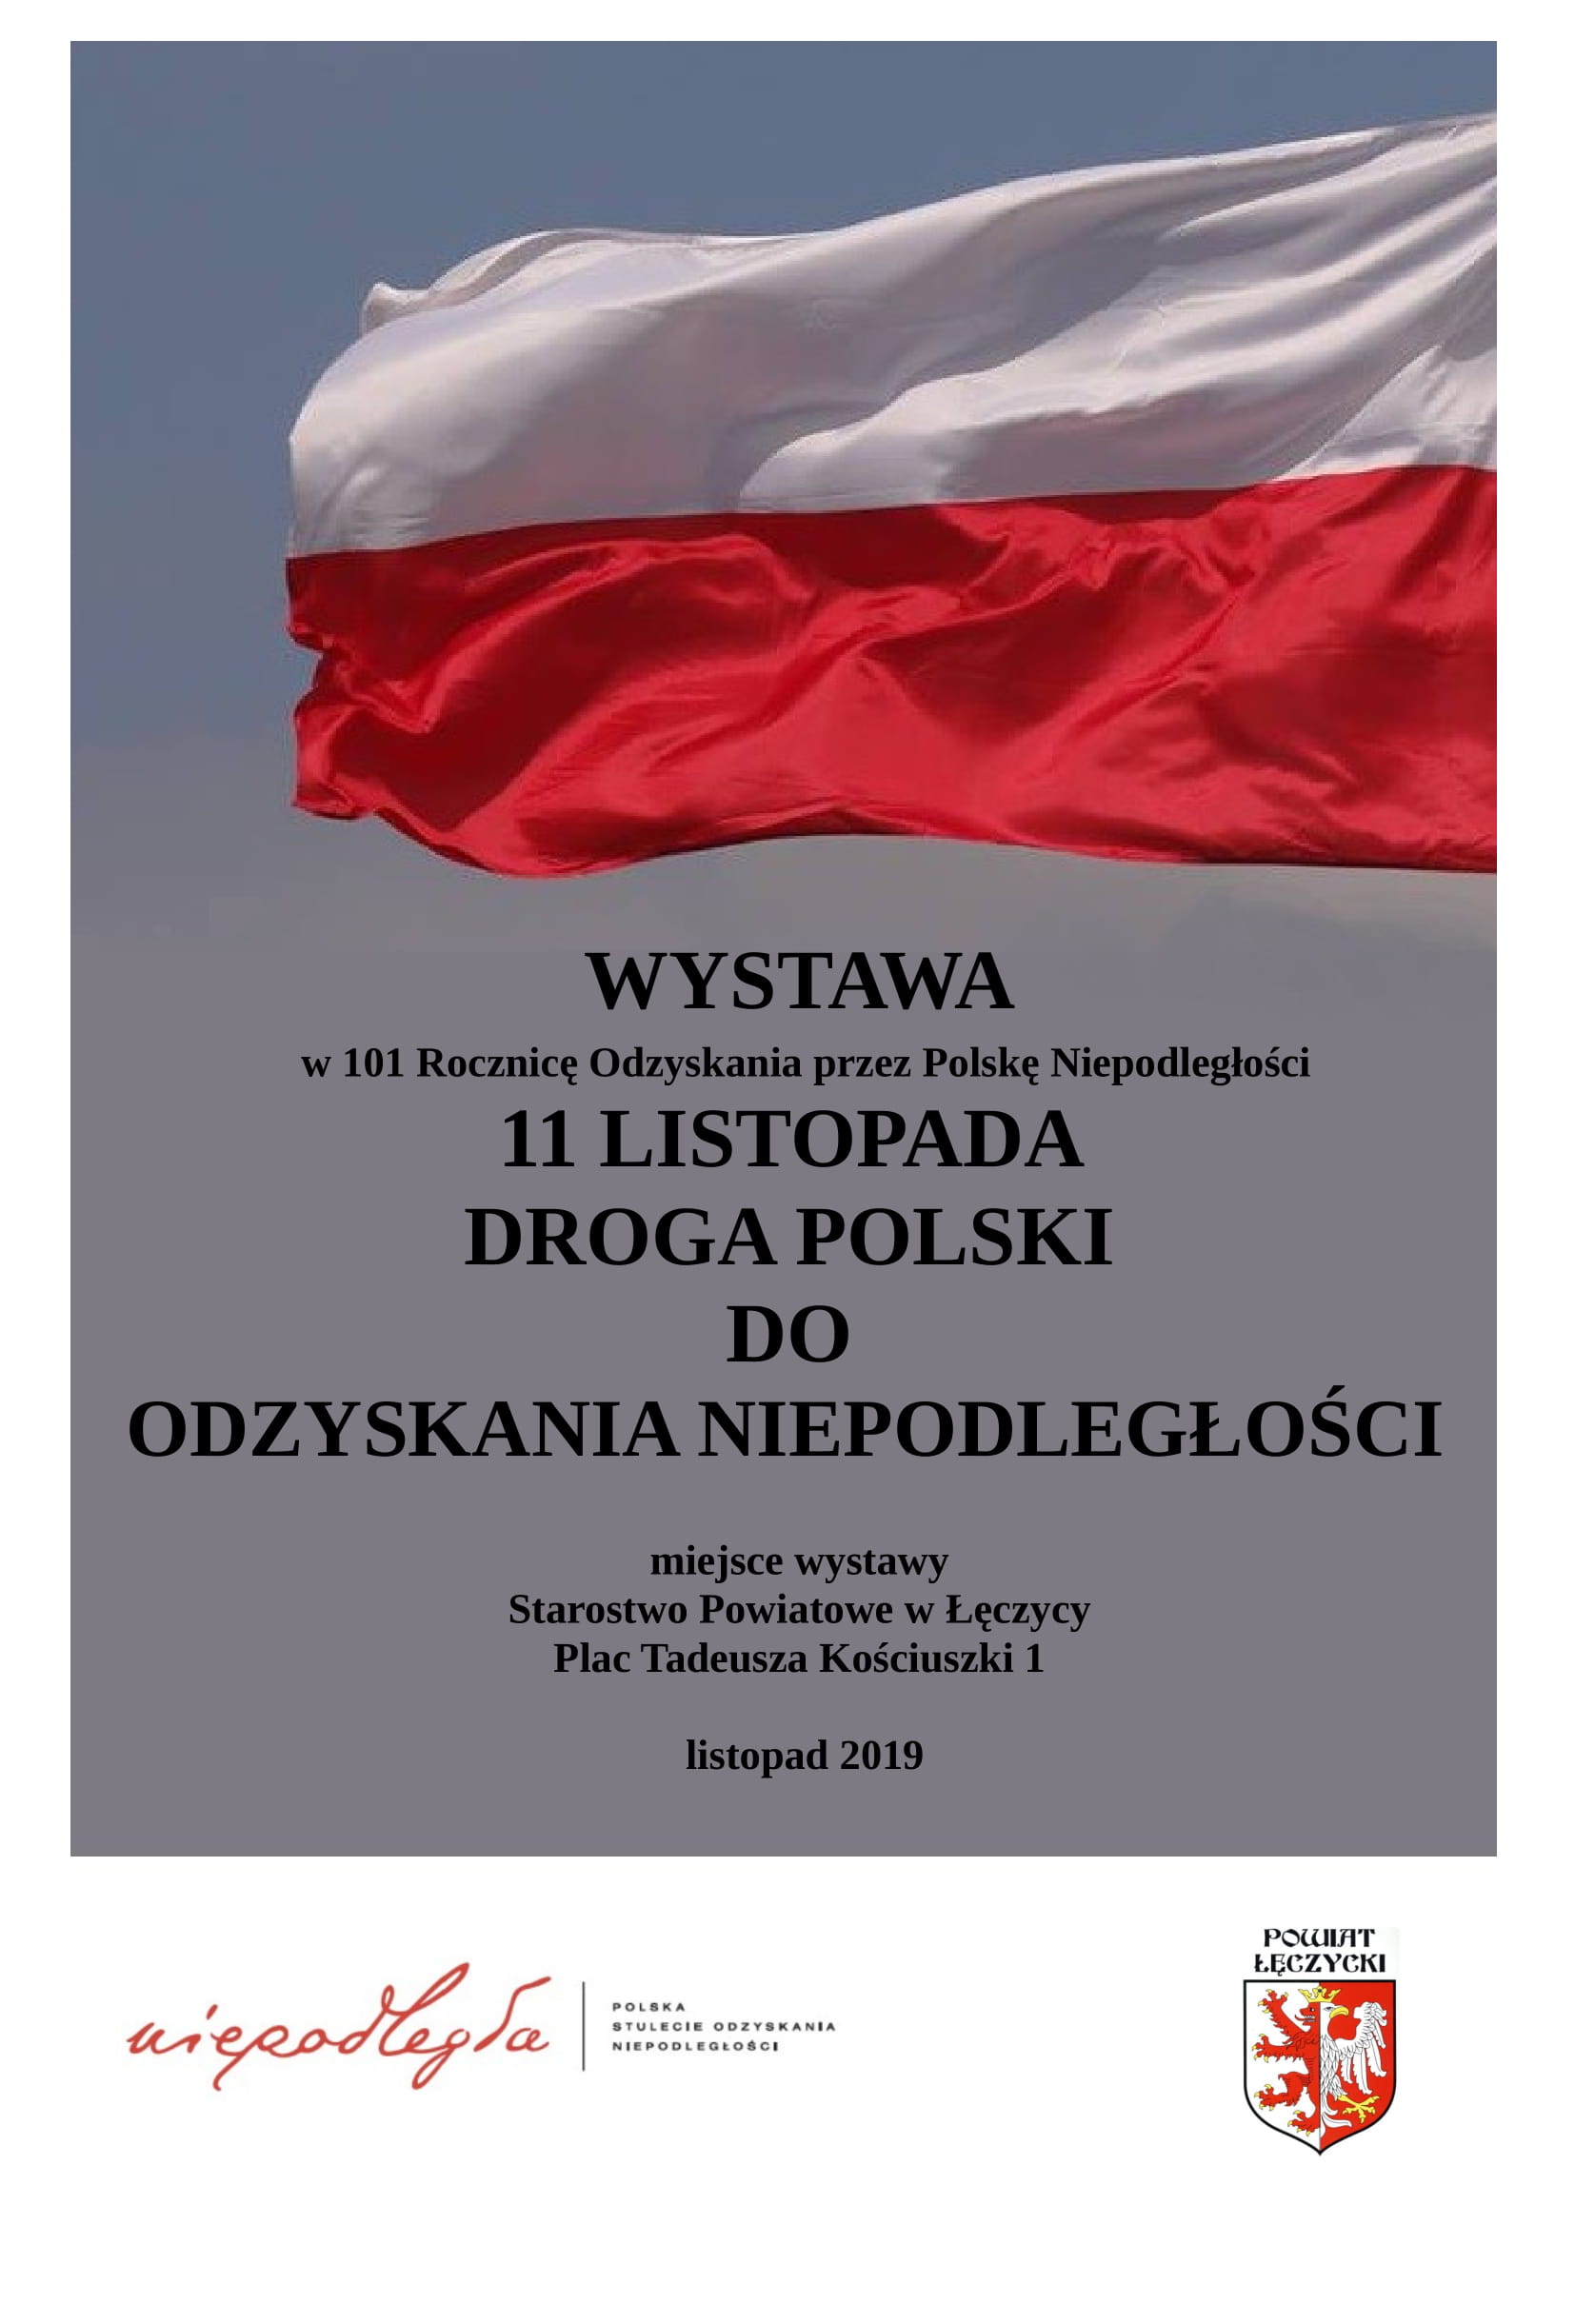 Wystawa z okazji 101 Rocznicy Odzyskania przez Polskę Niepodległości